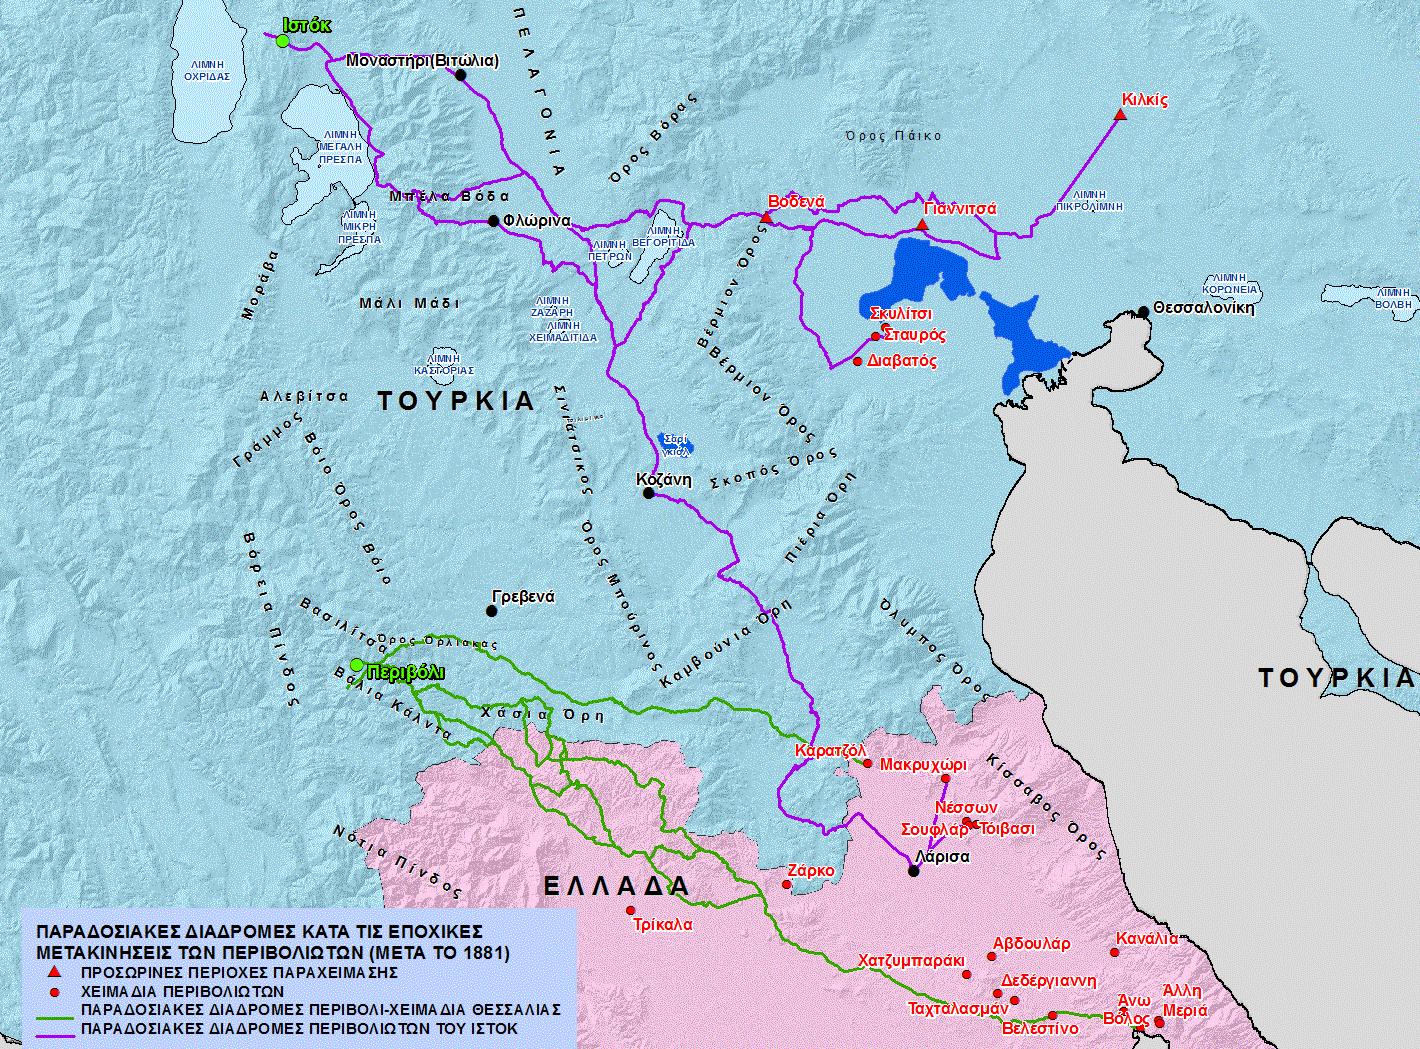 Χάρτης 6. Οι παραδοσιακές διαδρομές των Περιβολιωτών από το Περιβόλι και το Ιστόκ προς τα χειμαδιά της Θεσσαλίας και της Κεντρικής Μακεδονίας, μετά το 1881 και πριν από το 1912 [κλίμακα 1:750,000].